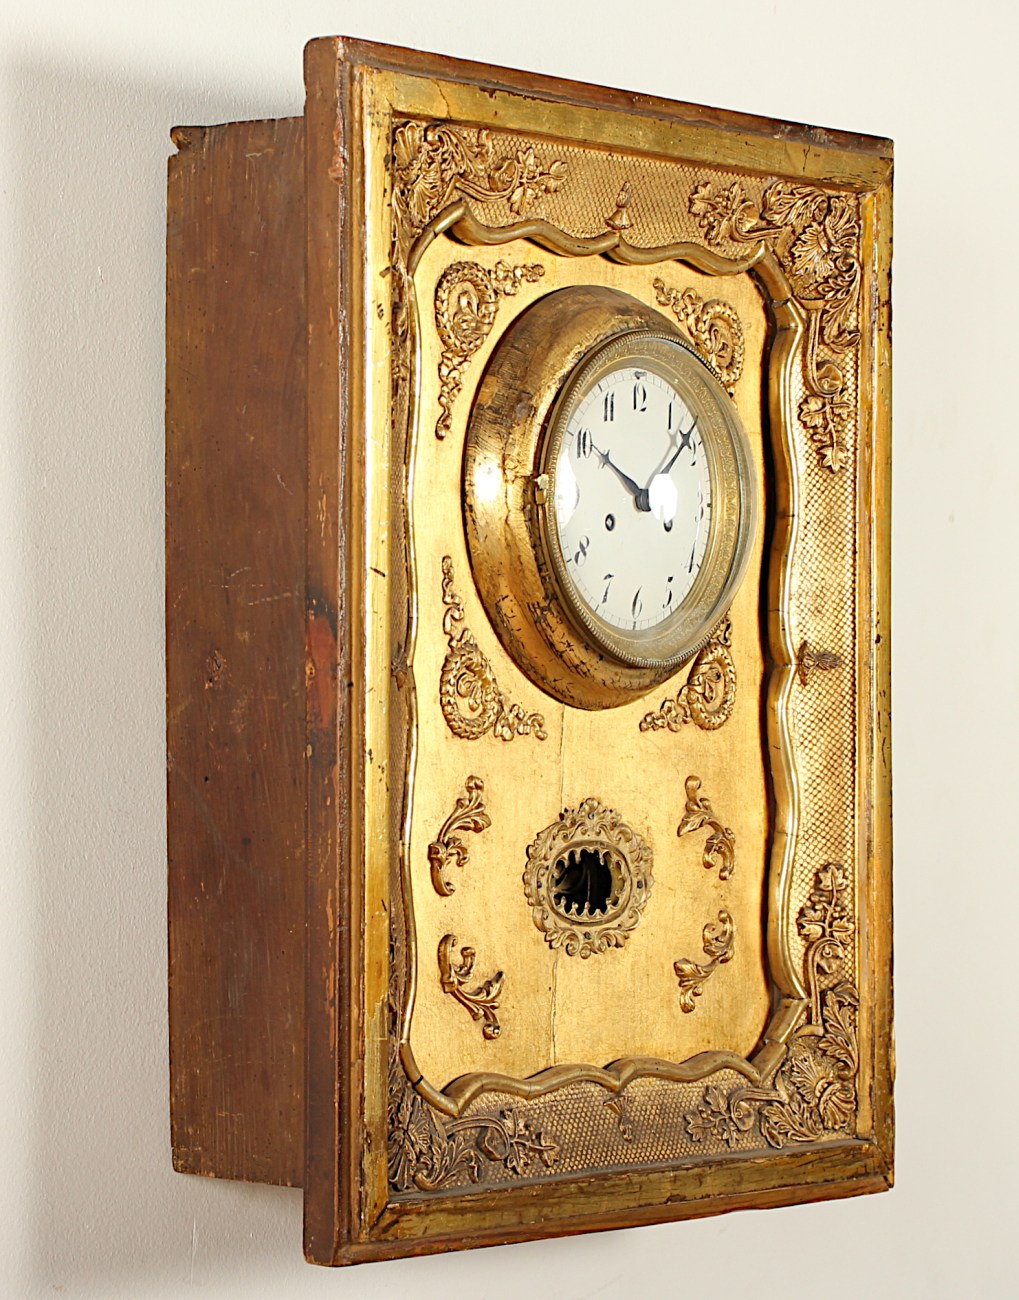 WIENER RAHMENUHR, Holz, goldfarben gefasst, rest., Werk mit Fadenaufhängung und Schlag auf Glocke, - Image 2 of 4